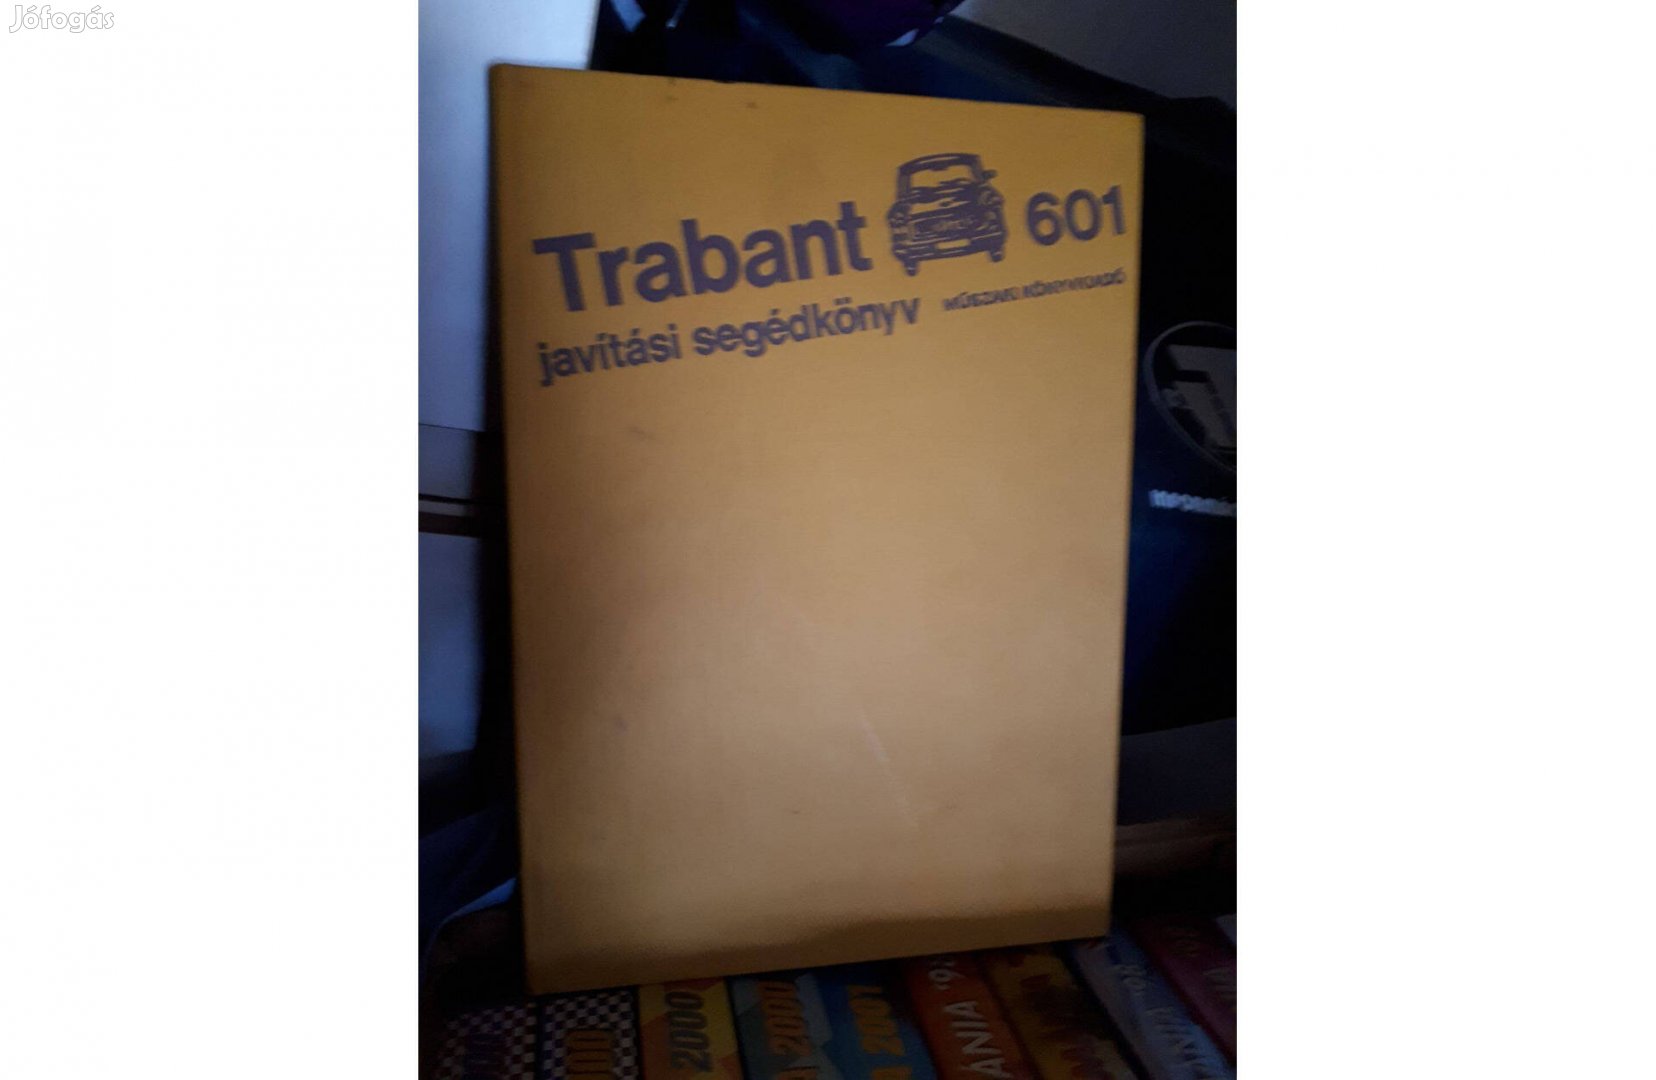 Trabant javítási segédkönyv !